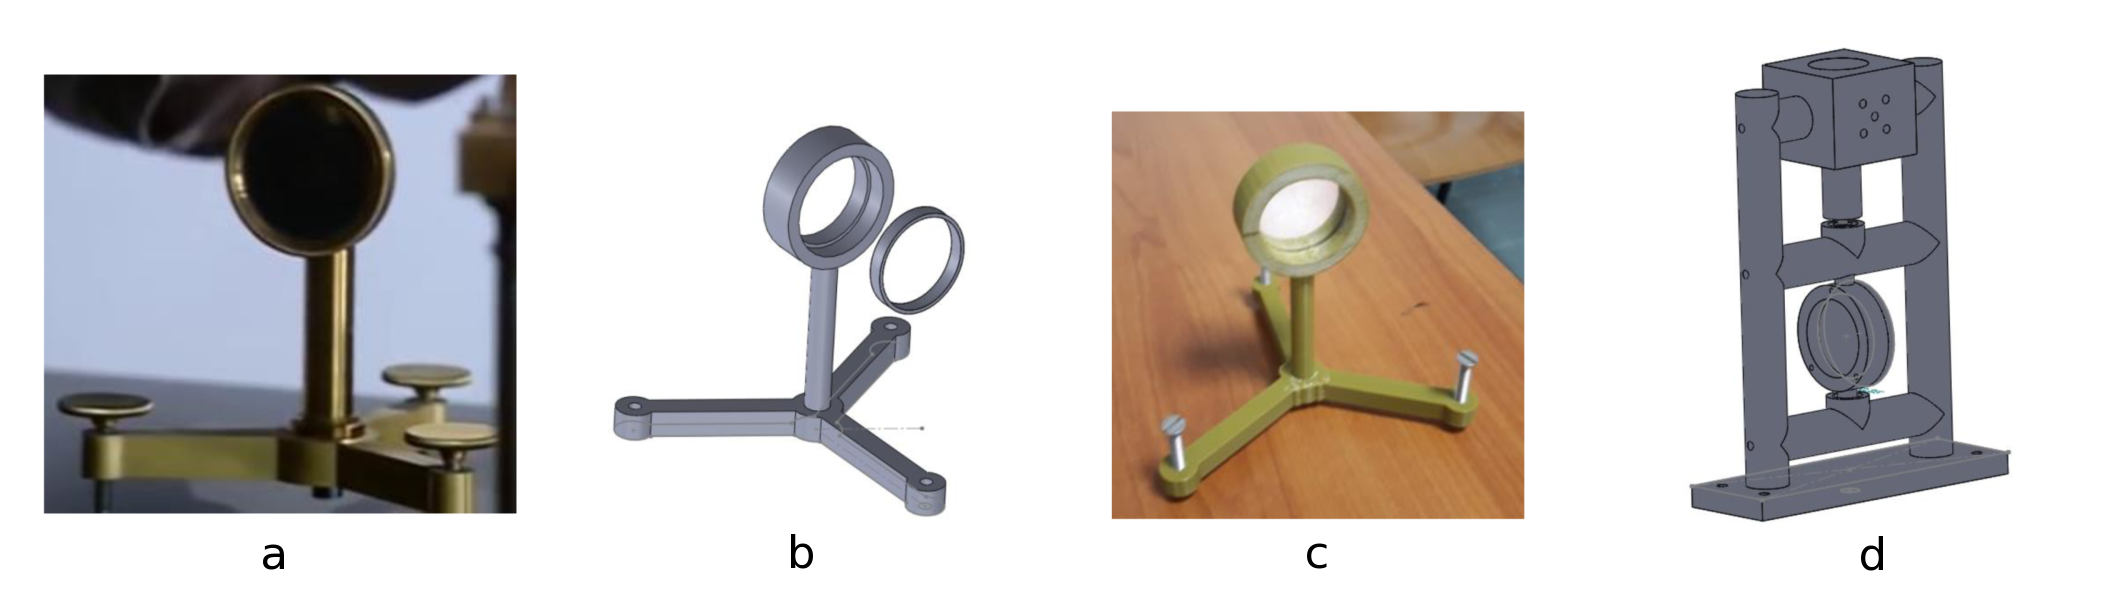 a) Support de lentille de l'expérience historique, b) Modélisation du support de lentille sous SOLIDWORKS, c) Support de lentille imprimé, d) Modélisation du support du miroir tournant sous SOLIDWORKS